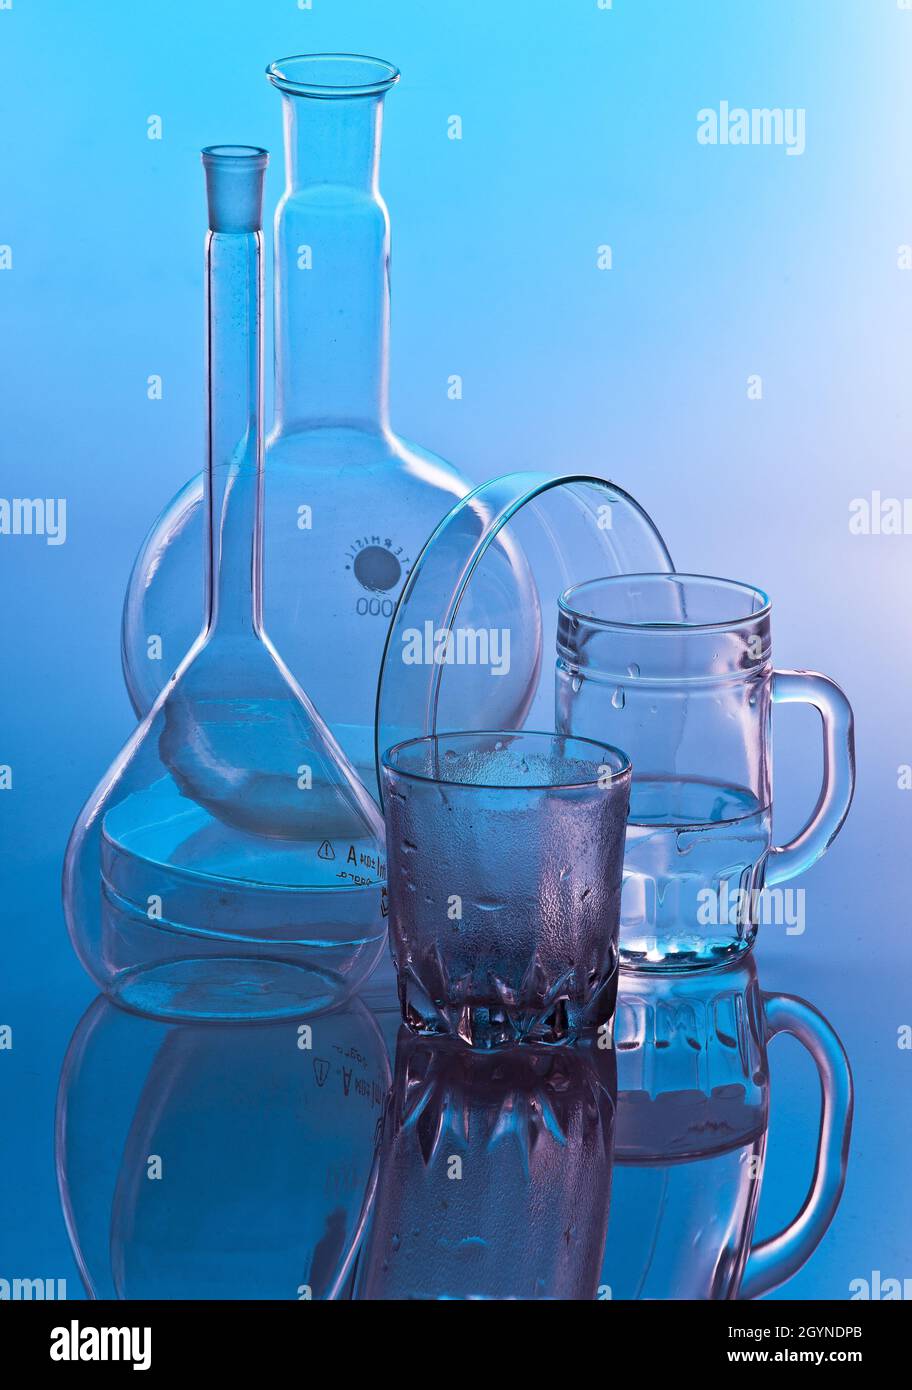 vertical de recipientes vidrio para laboratorio químico Fotografía de stock -